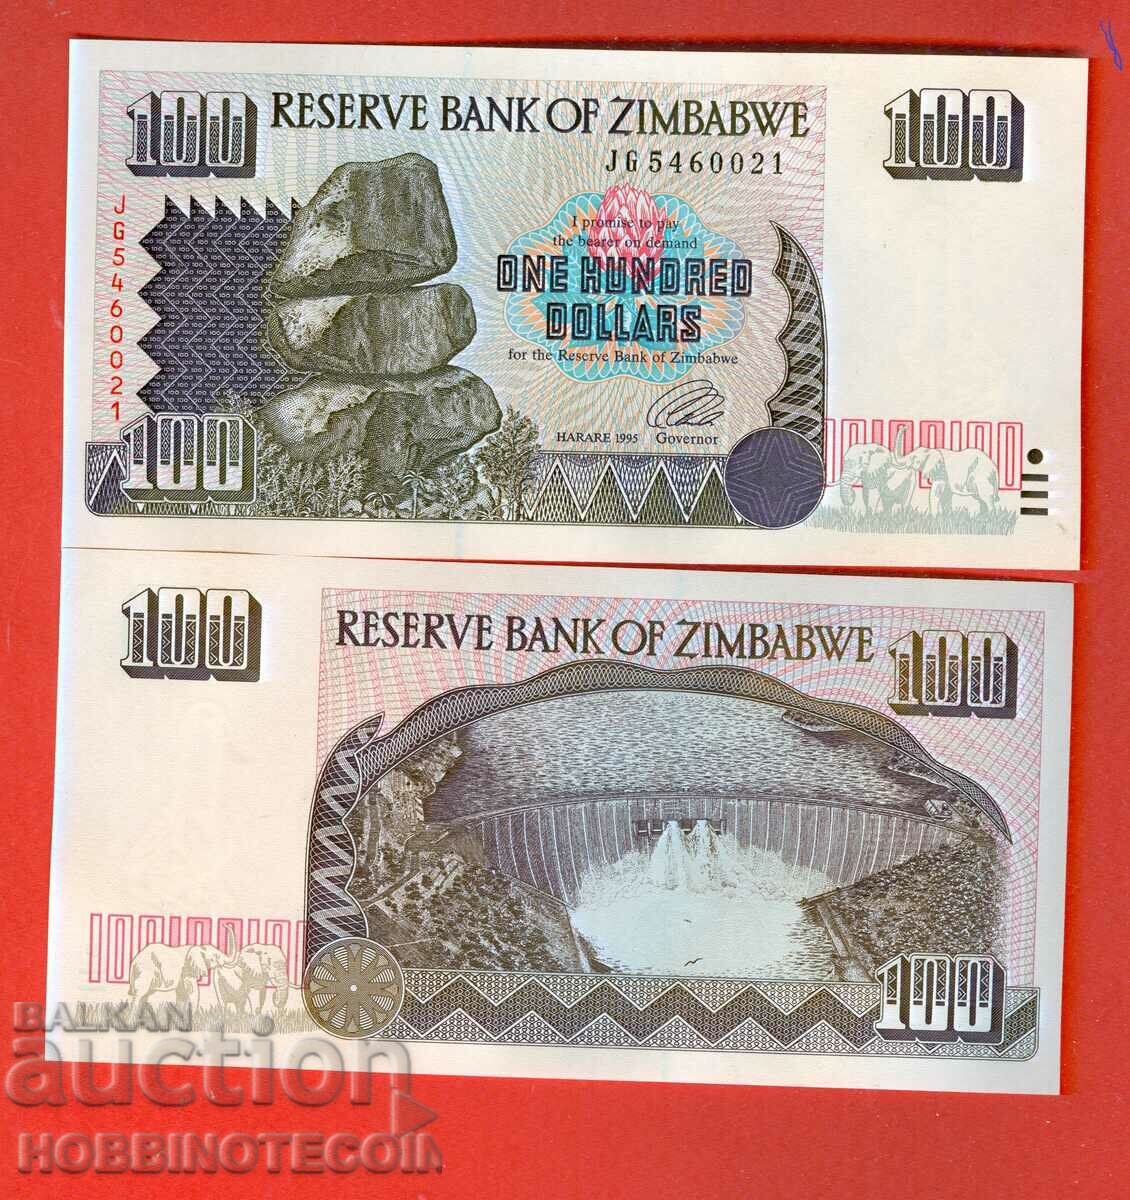 ZIMBABWE ZIMBABWE emisiune de 100 USD - emisiune 1995 NOU UNC